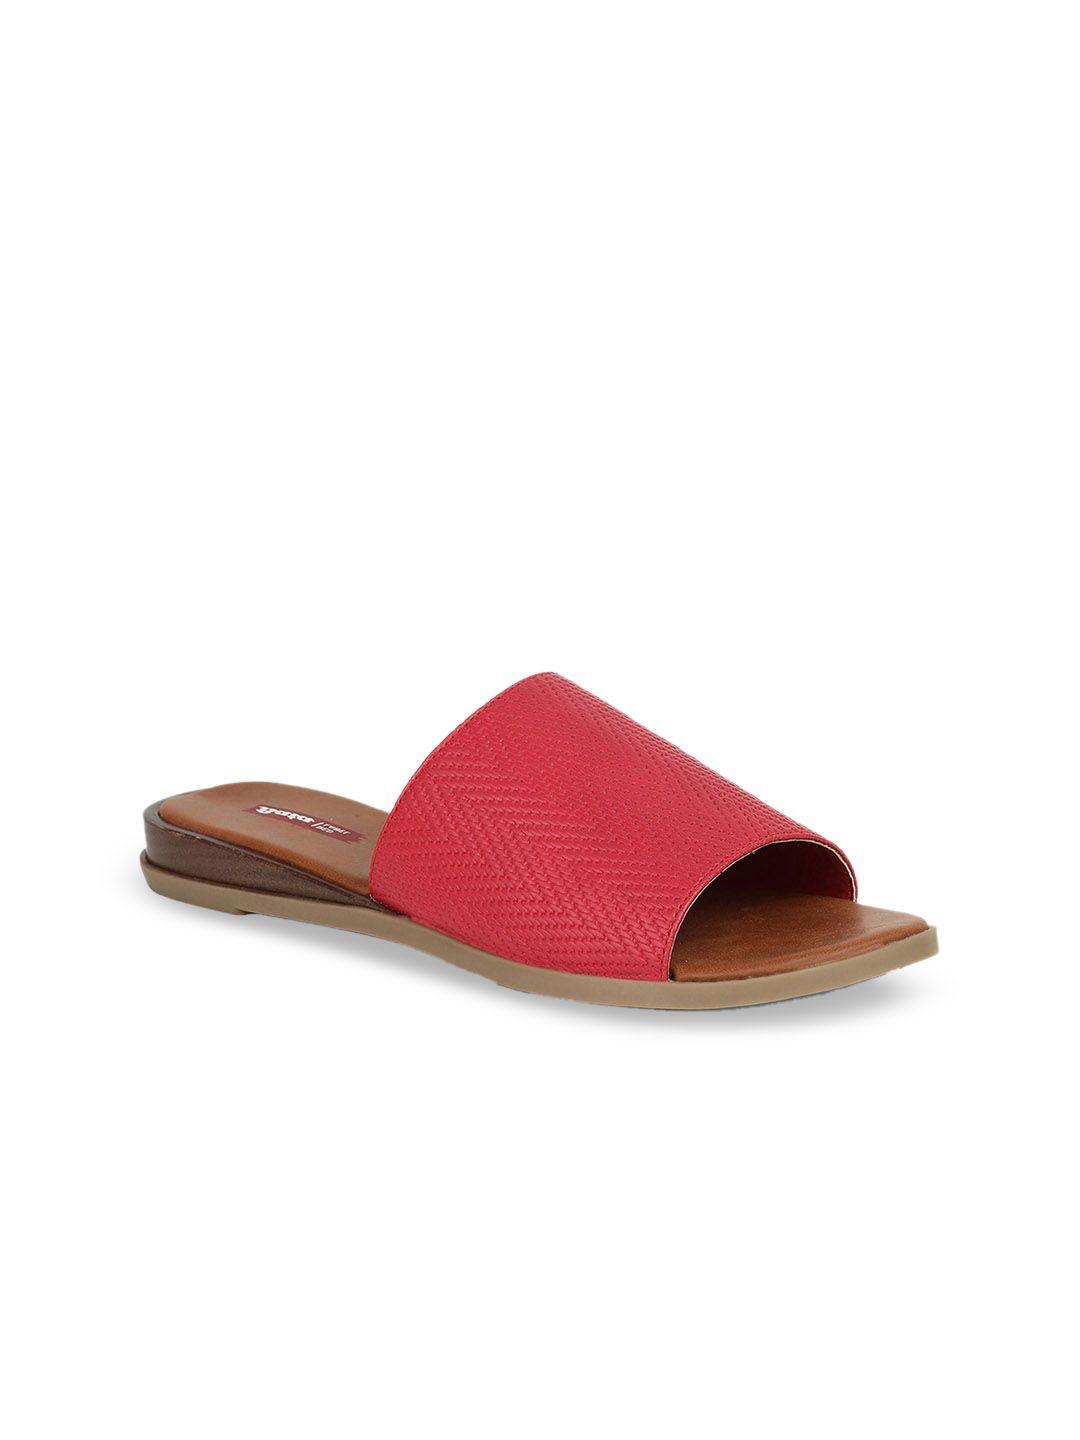 bata women red textured pu open toe flats